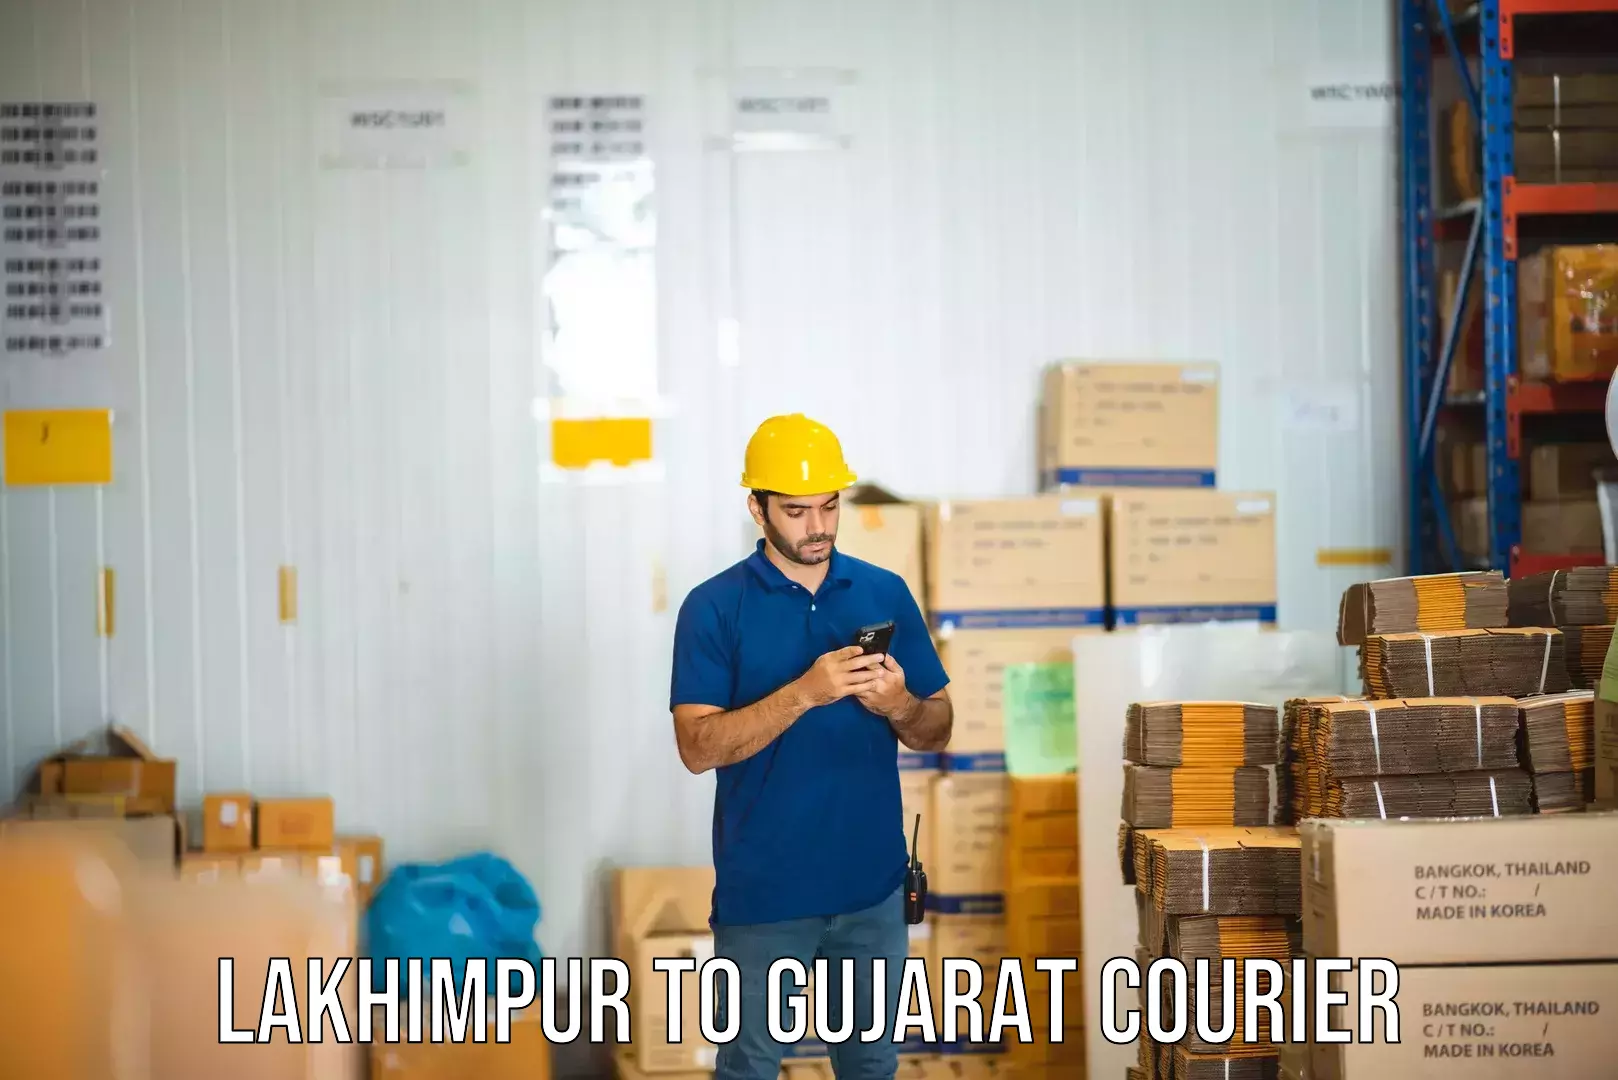 Courier service comparison Lakhimpur to Gujarat